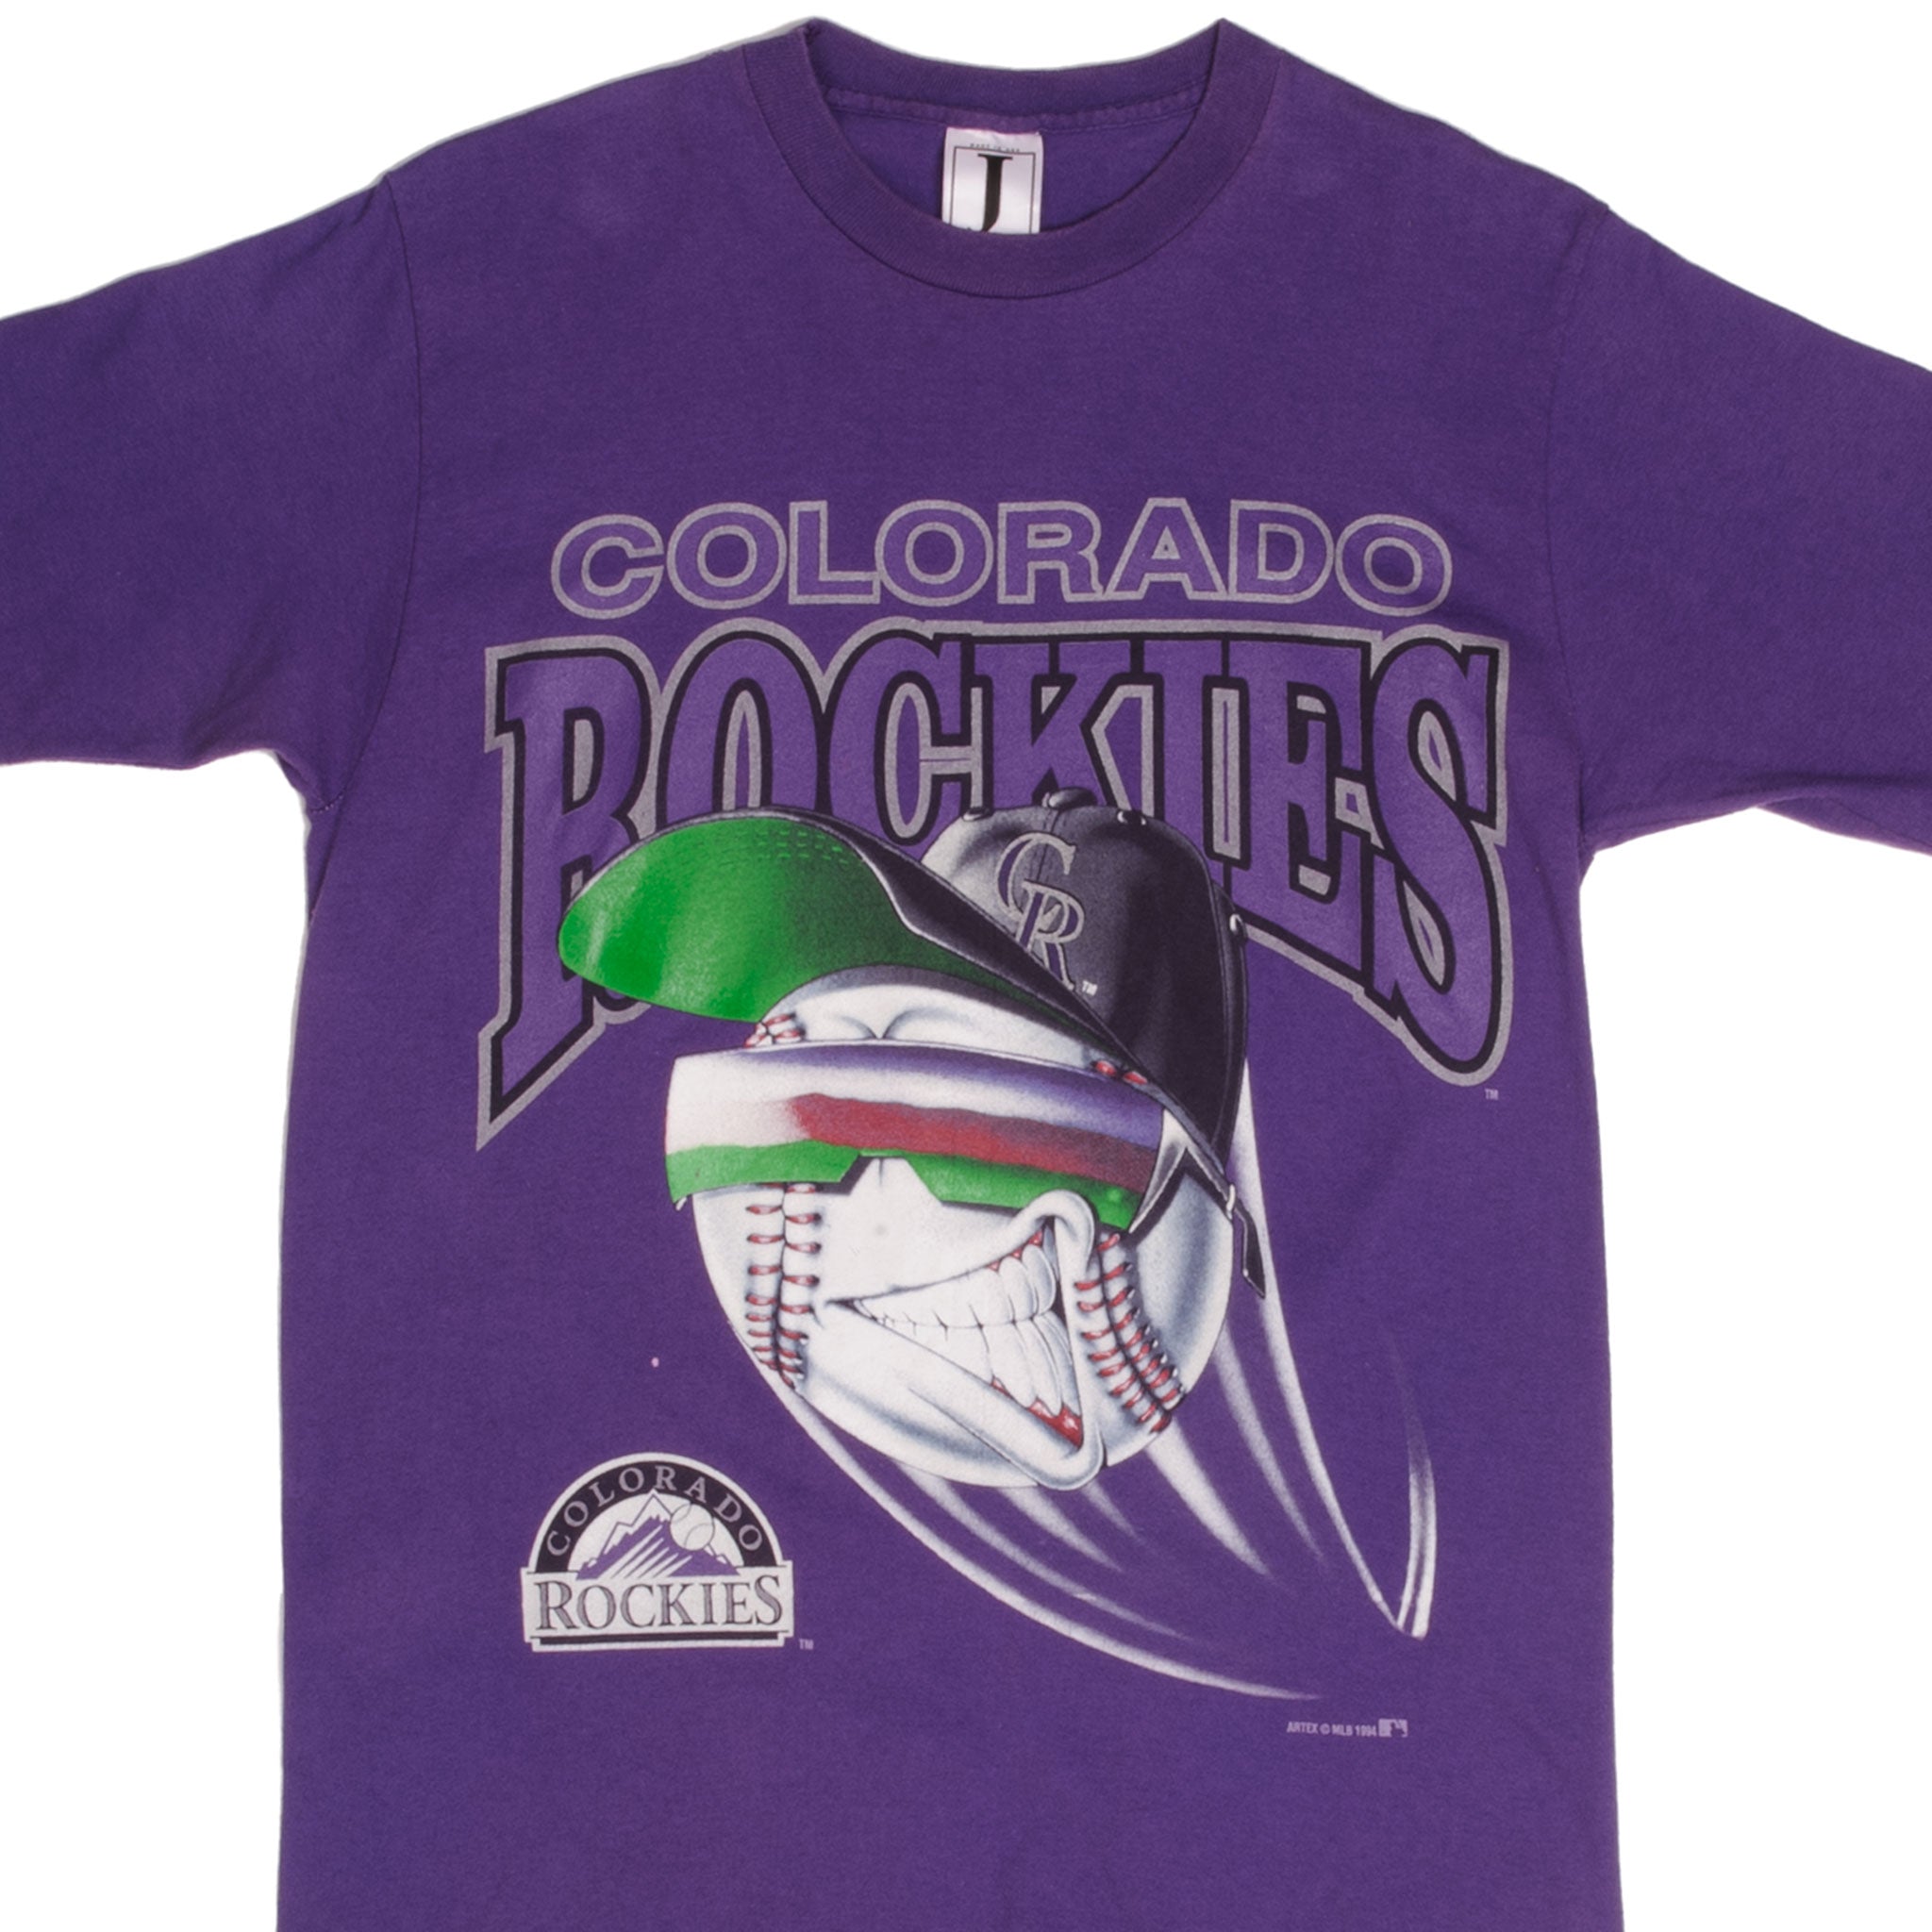  Colorado Rockies Shirt